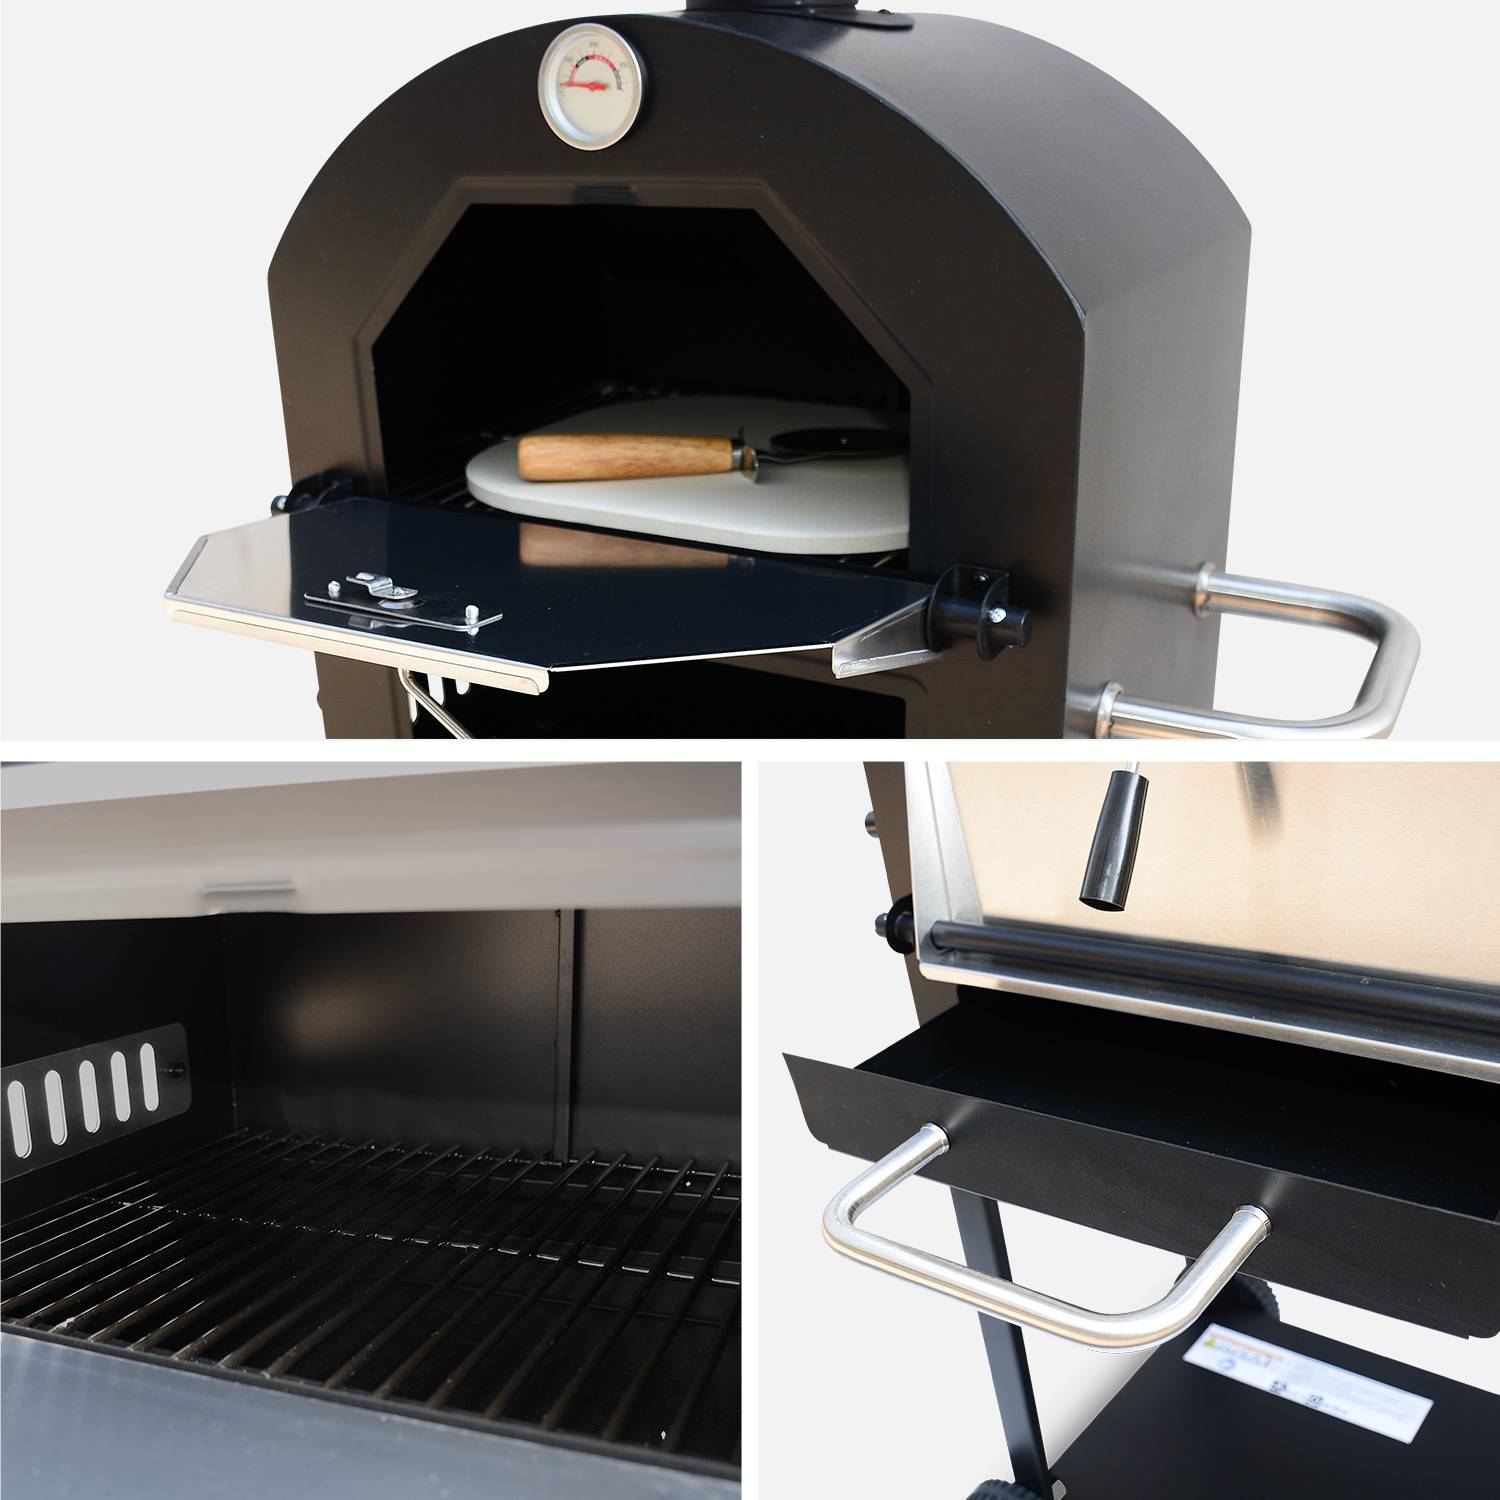 Multifunctionele houtskool pizzaoven voor buiten, kooksteen, ovenschep, pizzasnijder en hoes Photo8